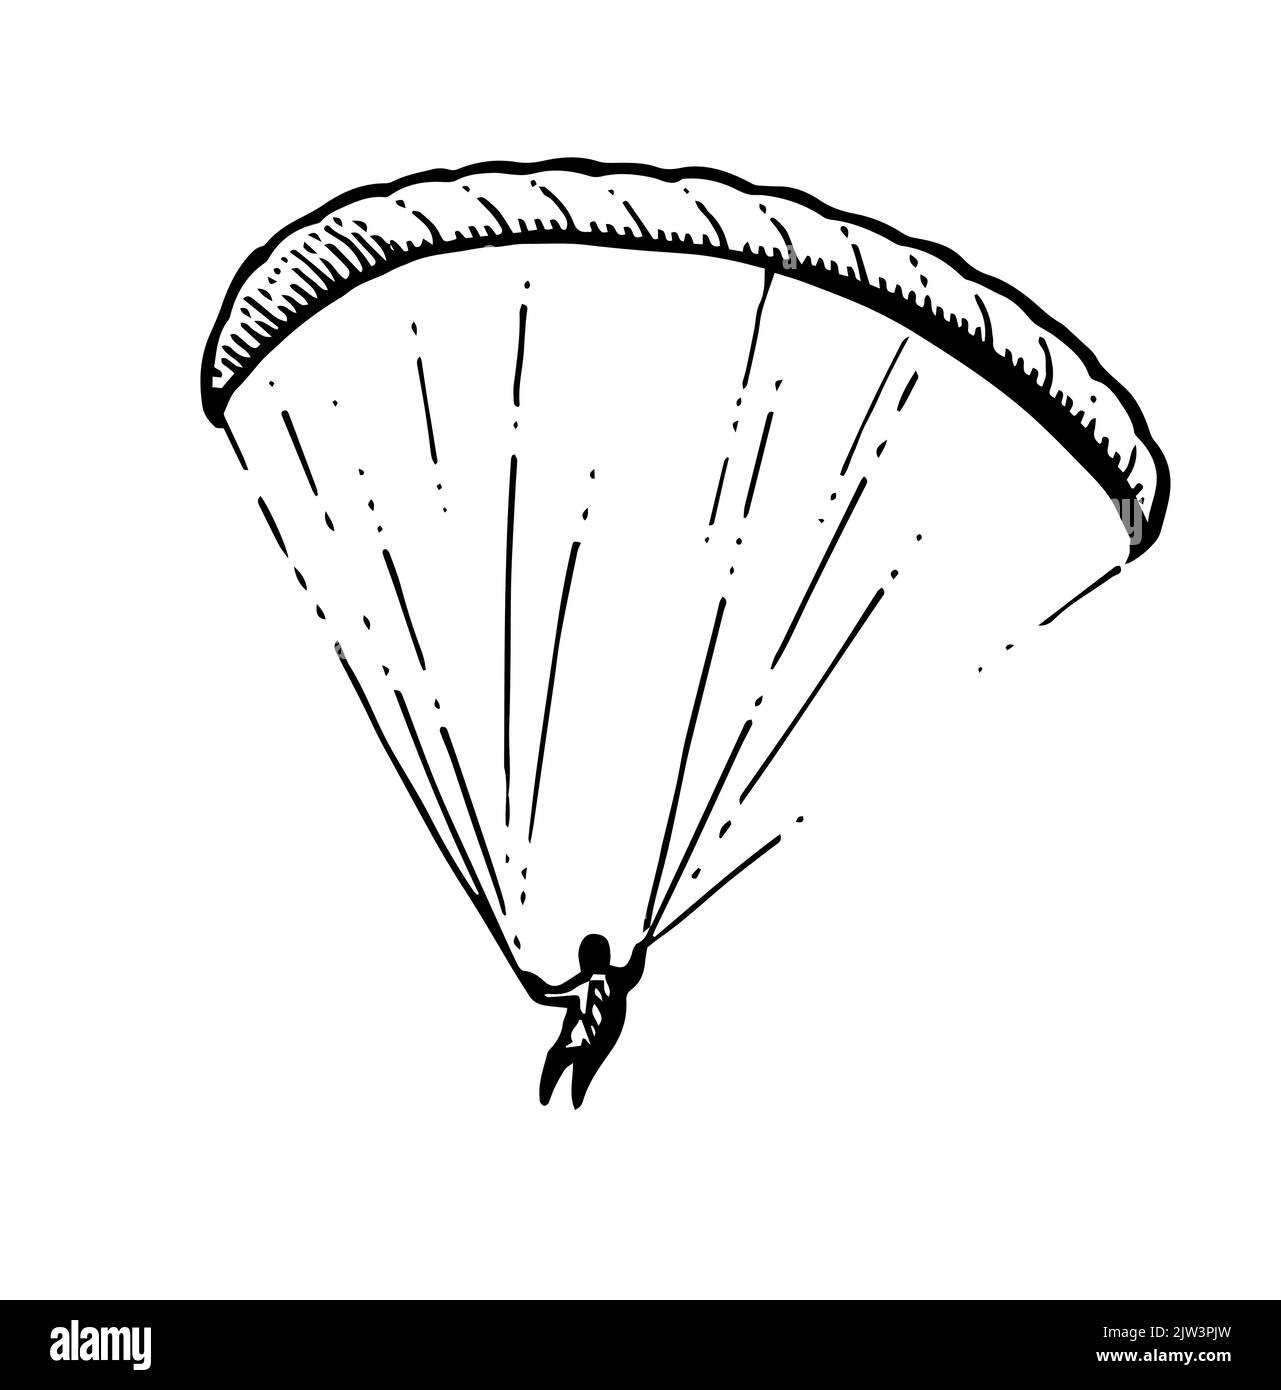 Gleitschirmflieger Fallschirmspringer. Gleitschirm mit Fallschirm. Air Extremsport. Kontrollierter Höhenflug. Handgezeichnete Umrissskizze. Isoliert auf weißem Hintergrund Stock Vektor